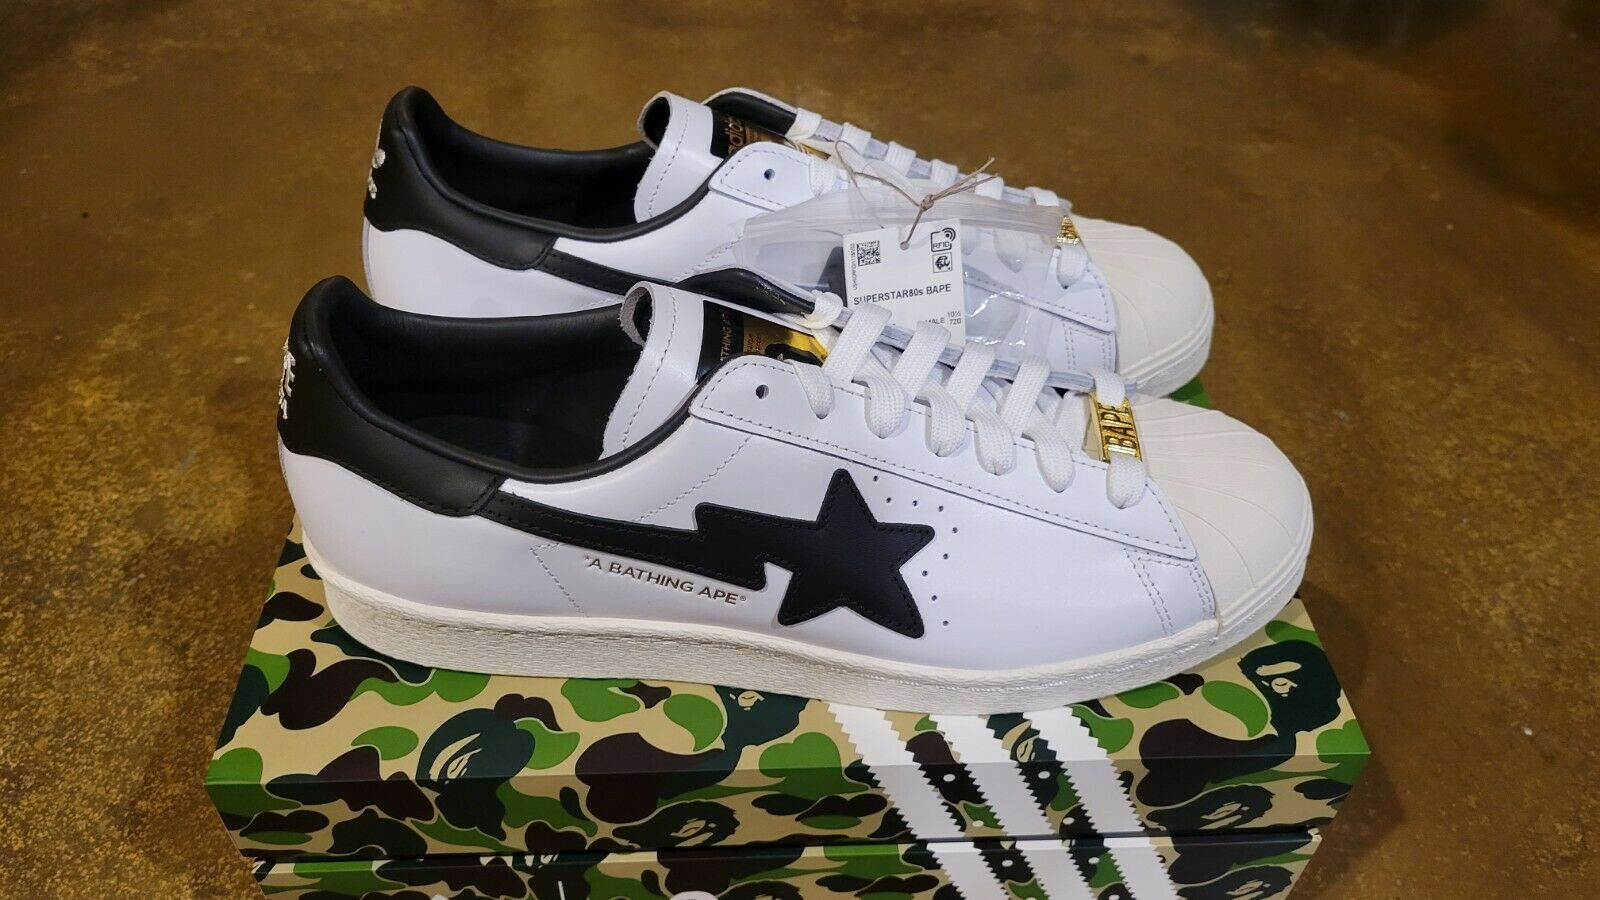 Bape X Adidas Superstar 80s Shoes White Black GZ8980 A Bathing Ape Men's Size 11